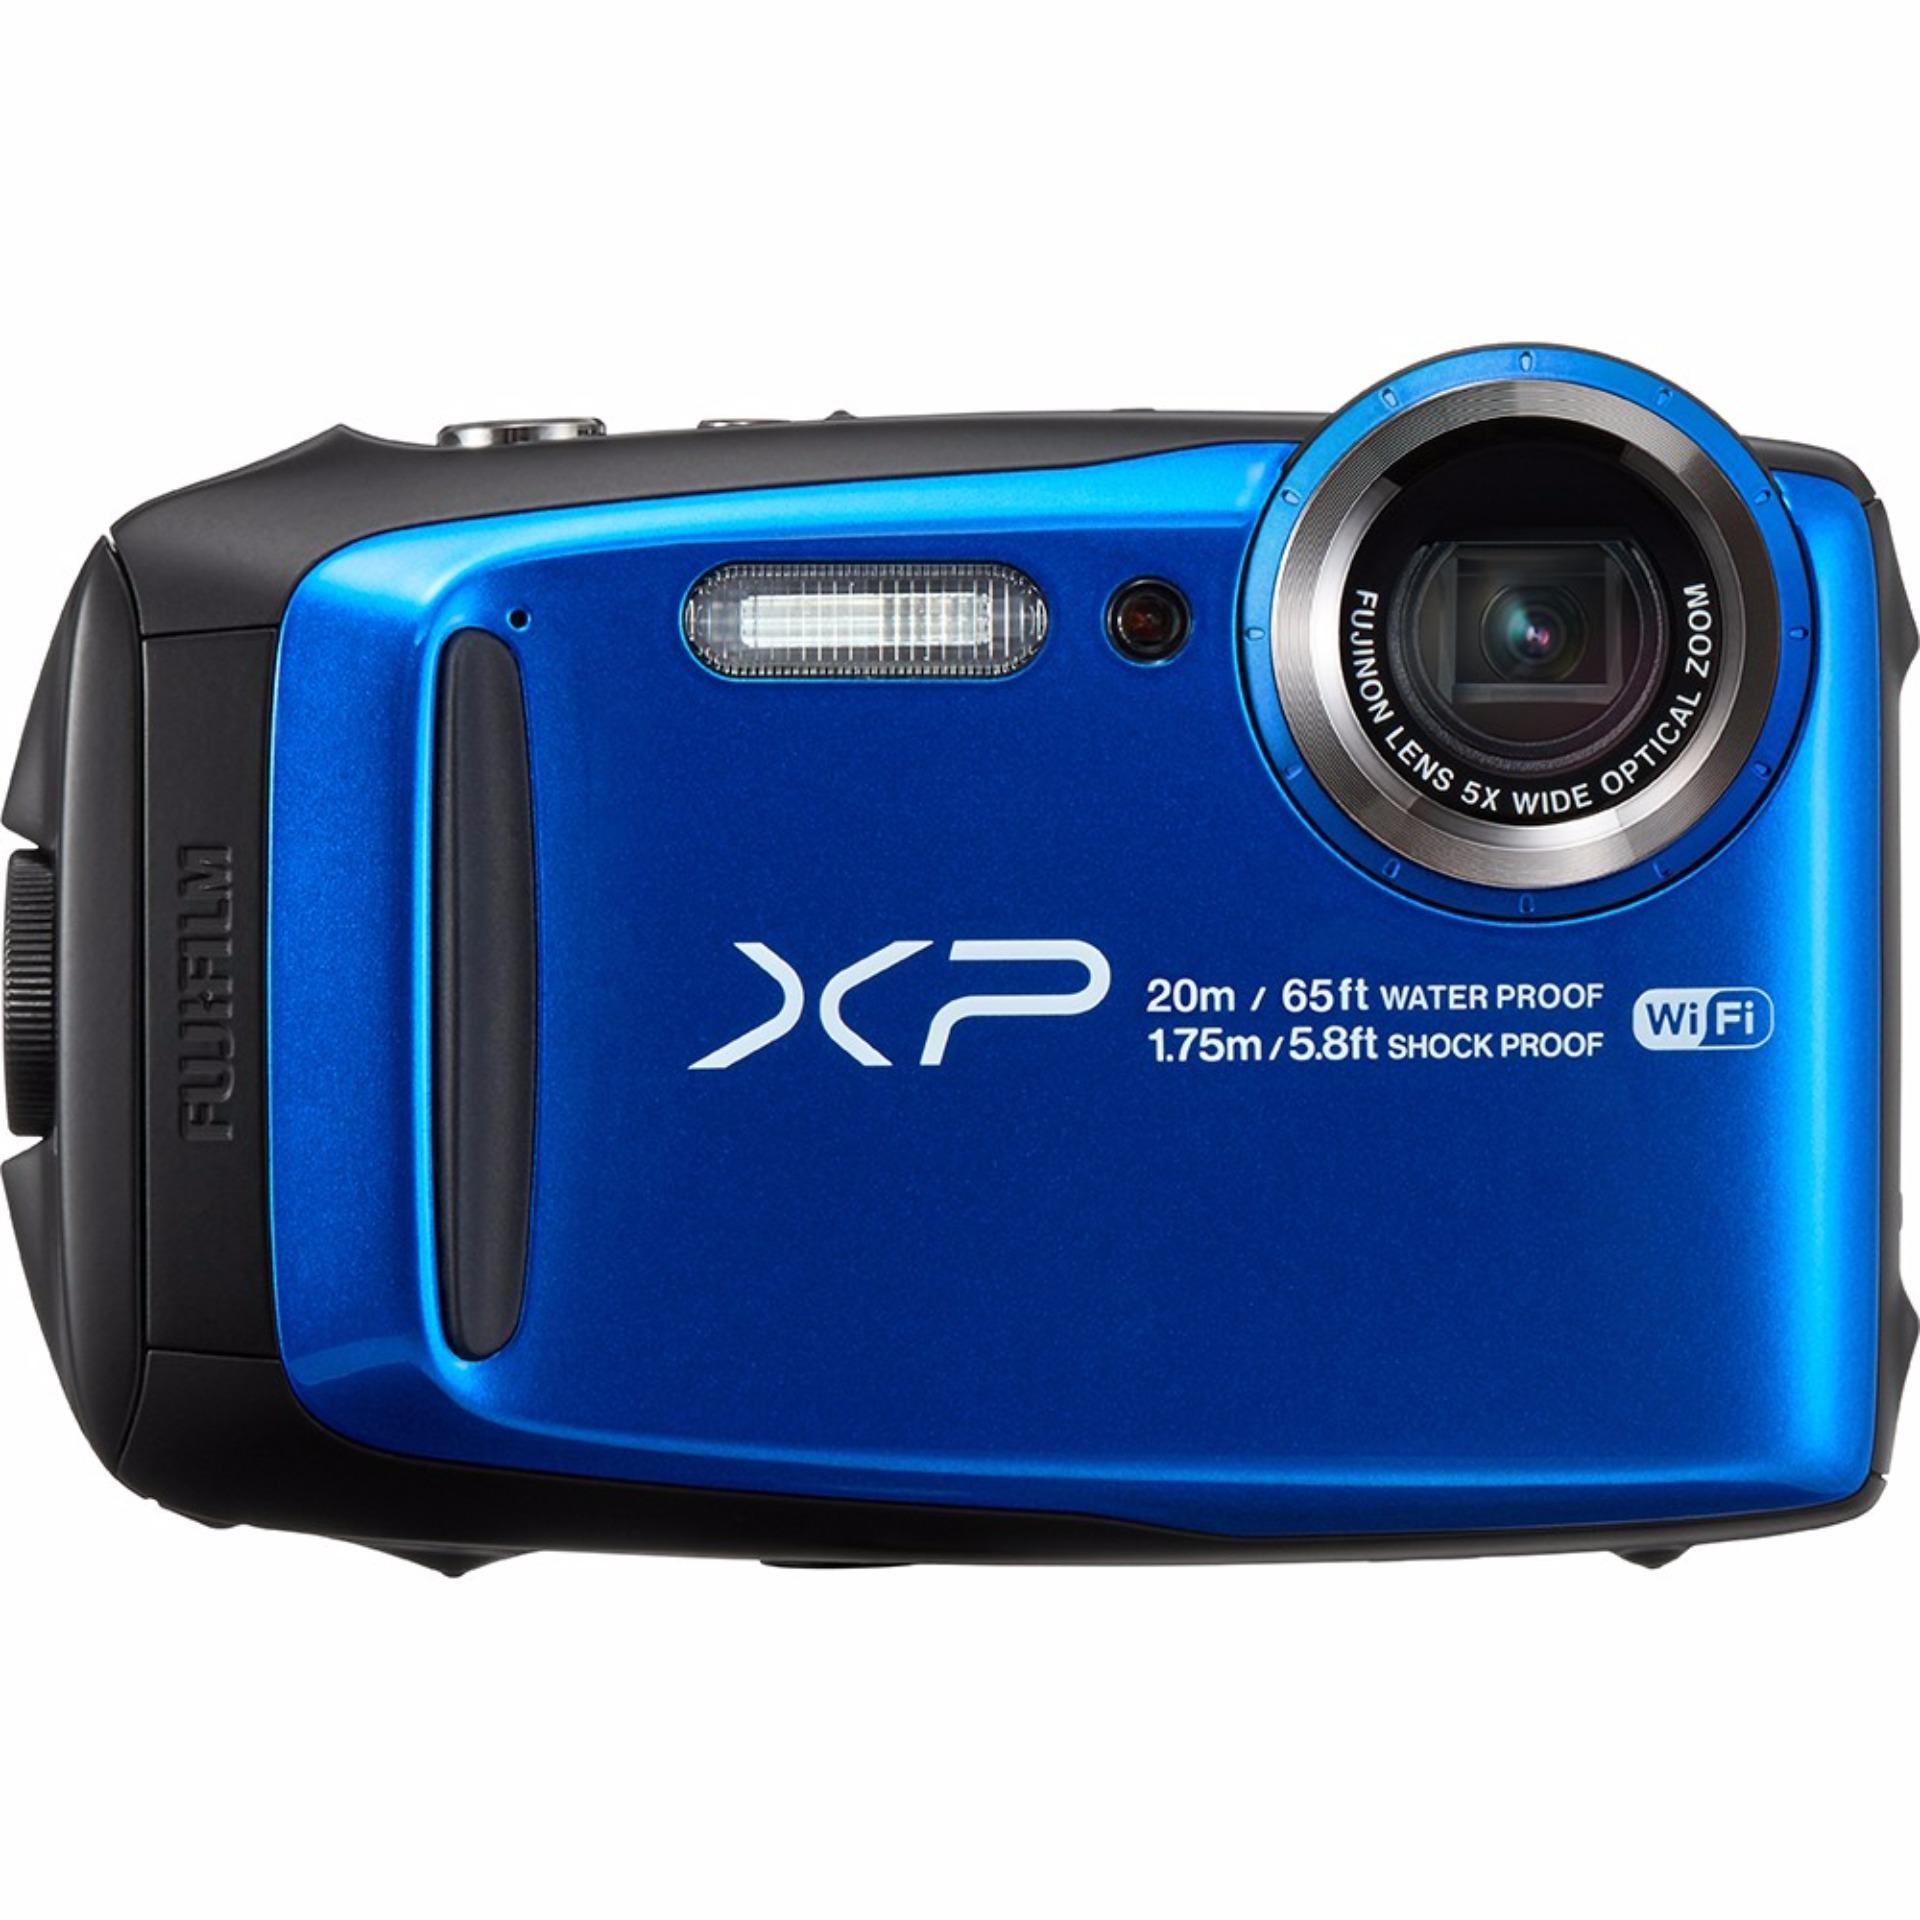 Máy ảnh chụp dưới nước Fujifilm FinePix XP120 (Xanh Blue) - Hãng phân phối chính thức